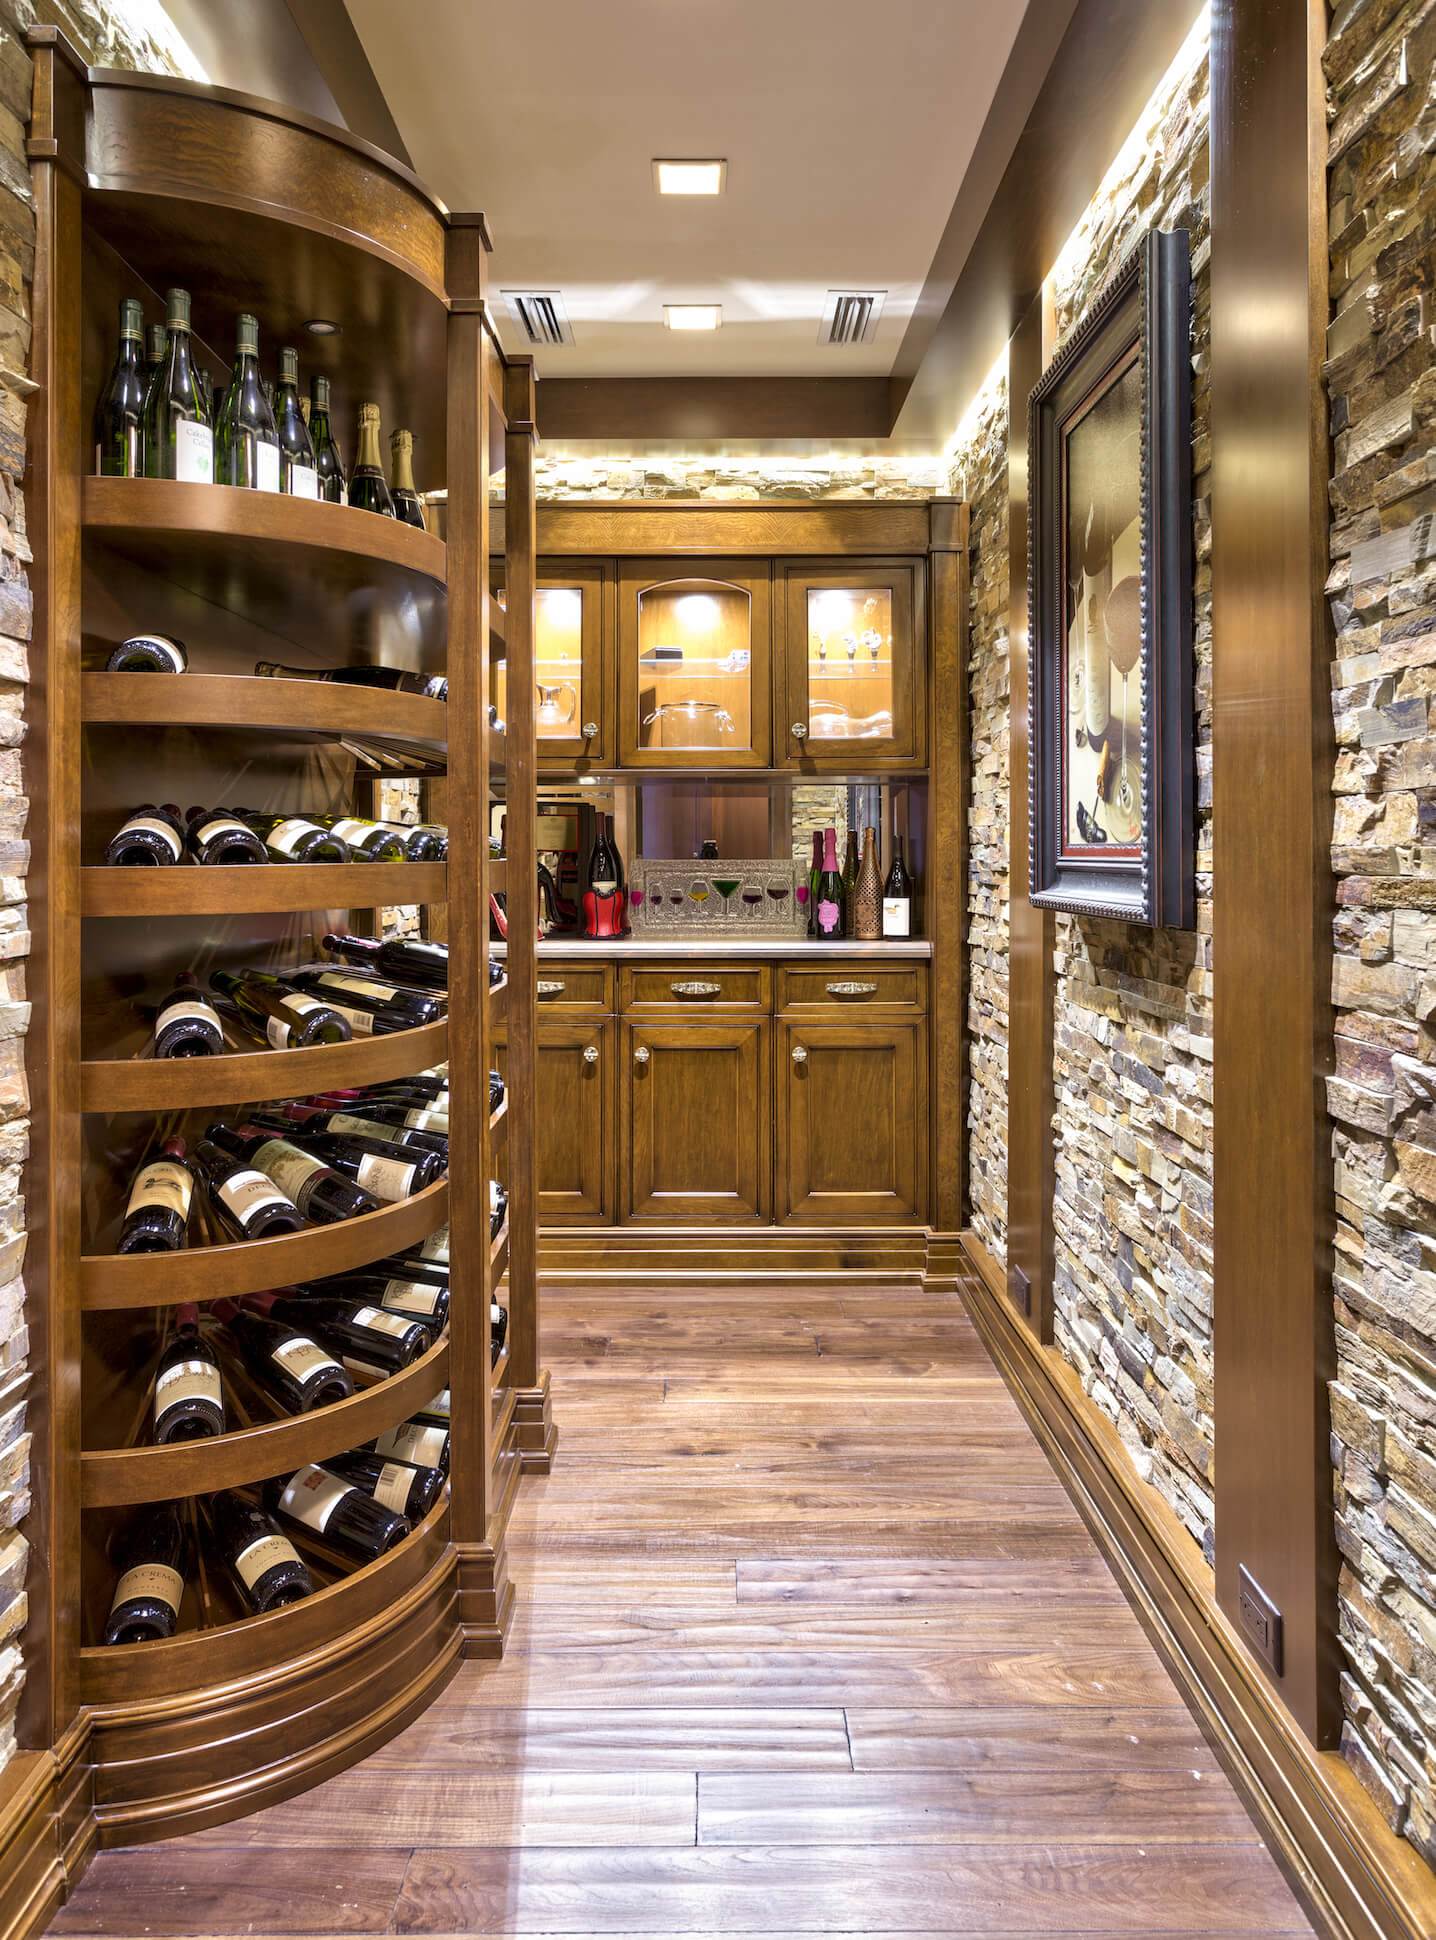 豪华的酒窖由石砖和丰富的木材混合装饰而成，右边是弯曲的架子，中间是小酒吧。内部照明的橱柜允许大胆展示玻璃器皿。